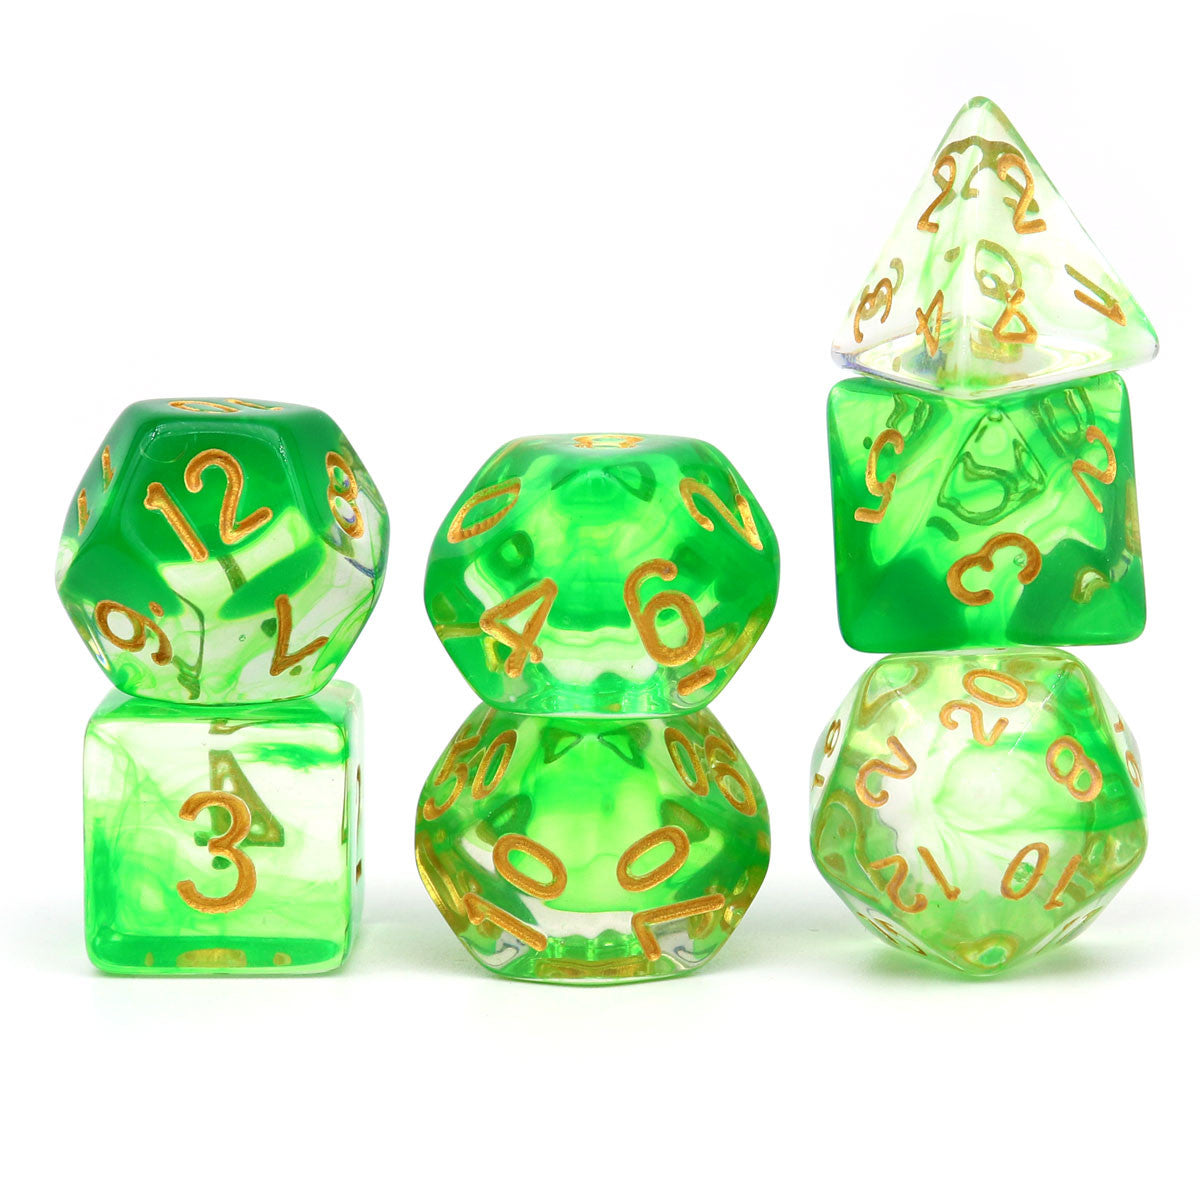 green dice, vapor dice, wisp dice, ink dice clear dice, swirl dice, dnd dice, rpg dice, polyhedral dice